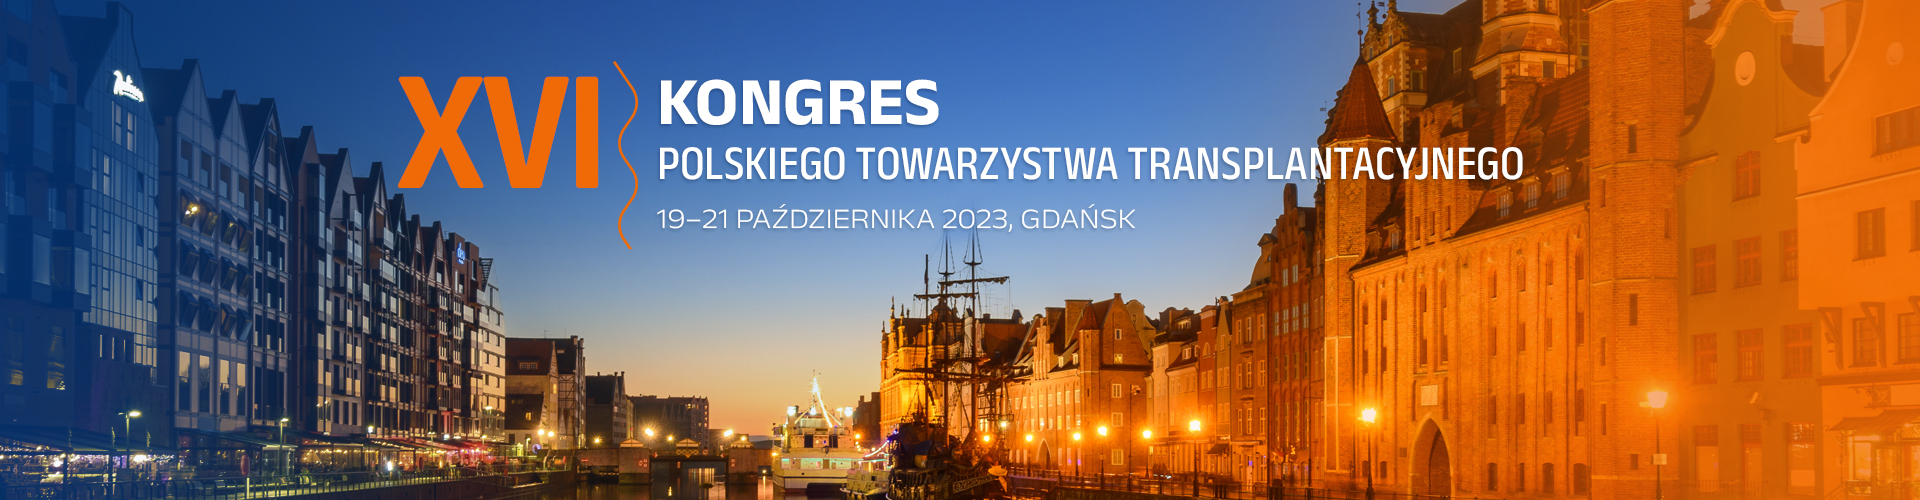 XVI Kongres Polskiego Towarzystwa Transplantacyjnego